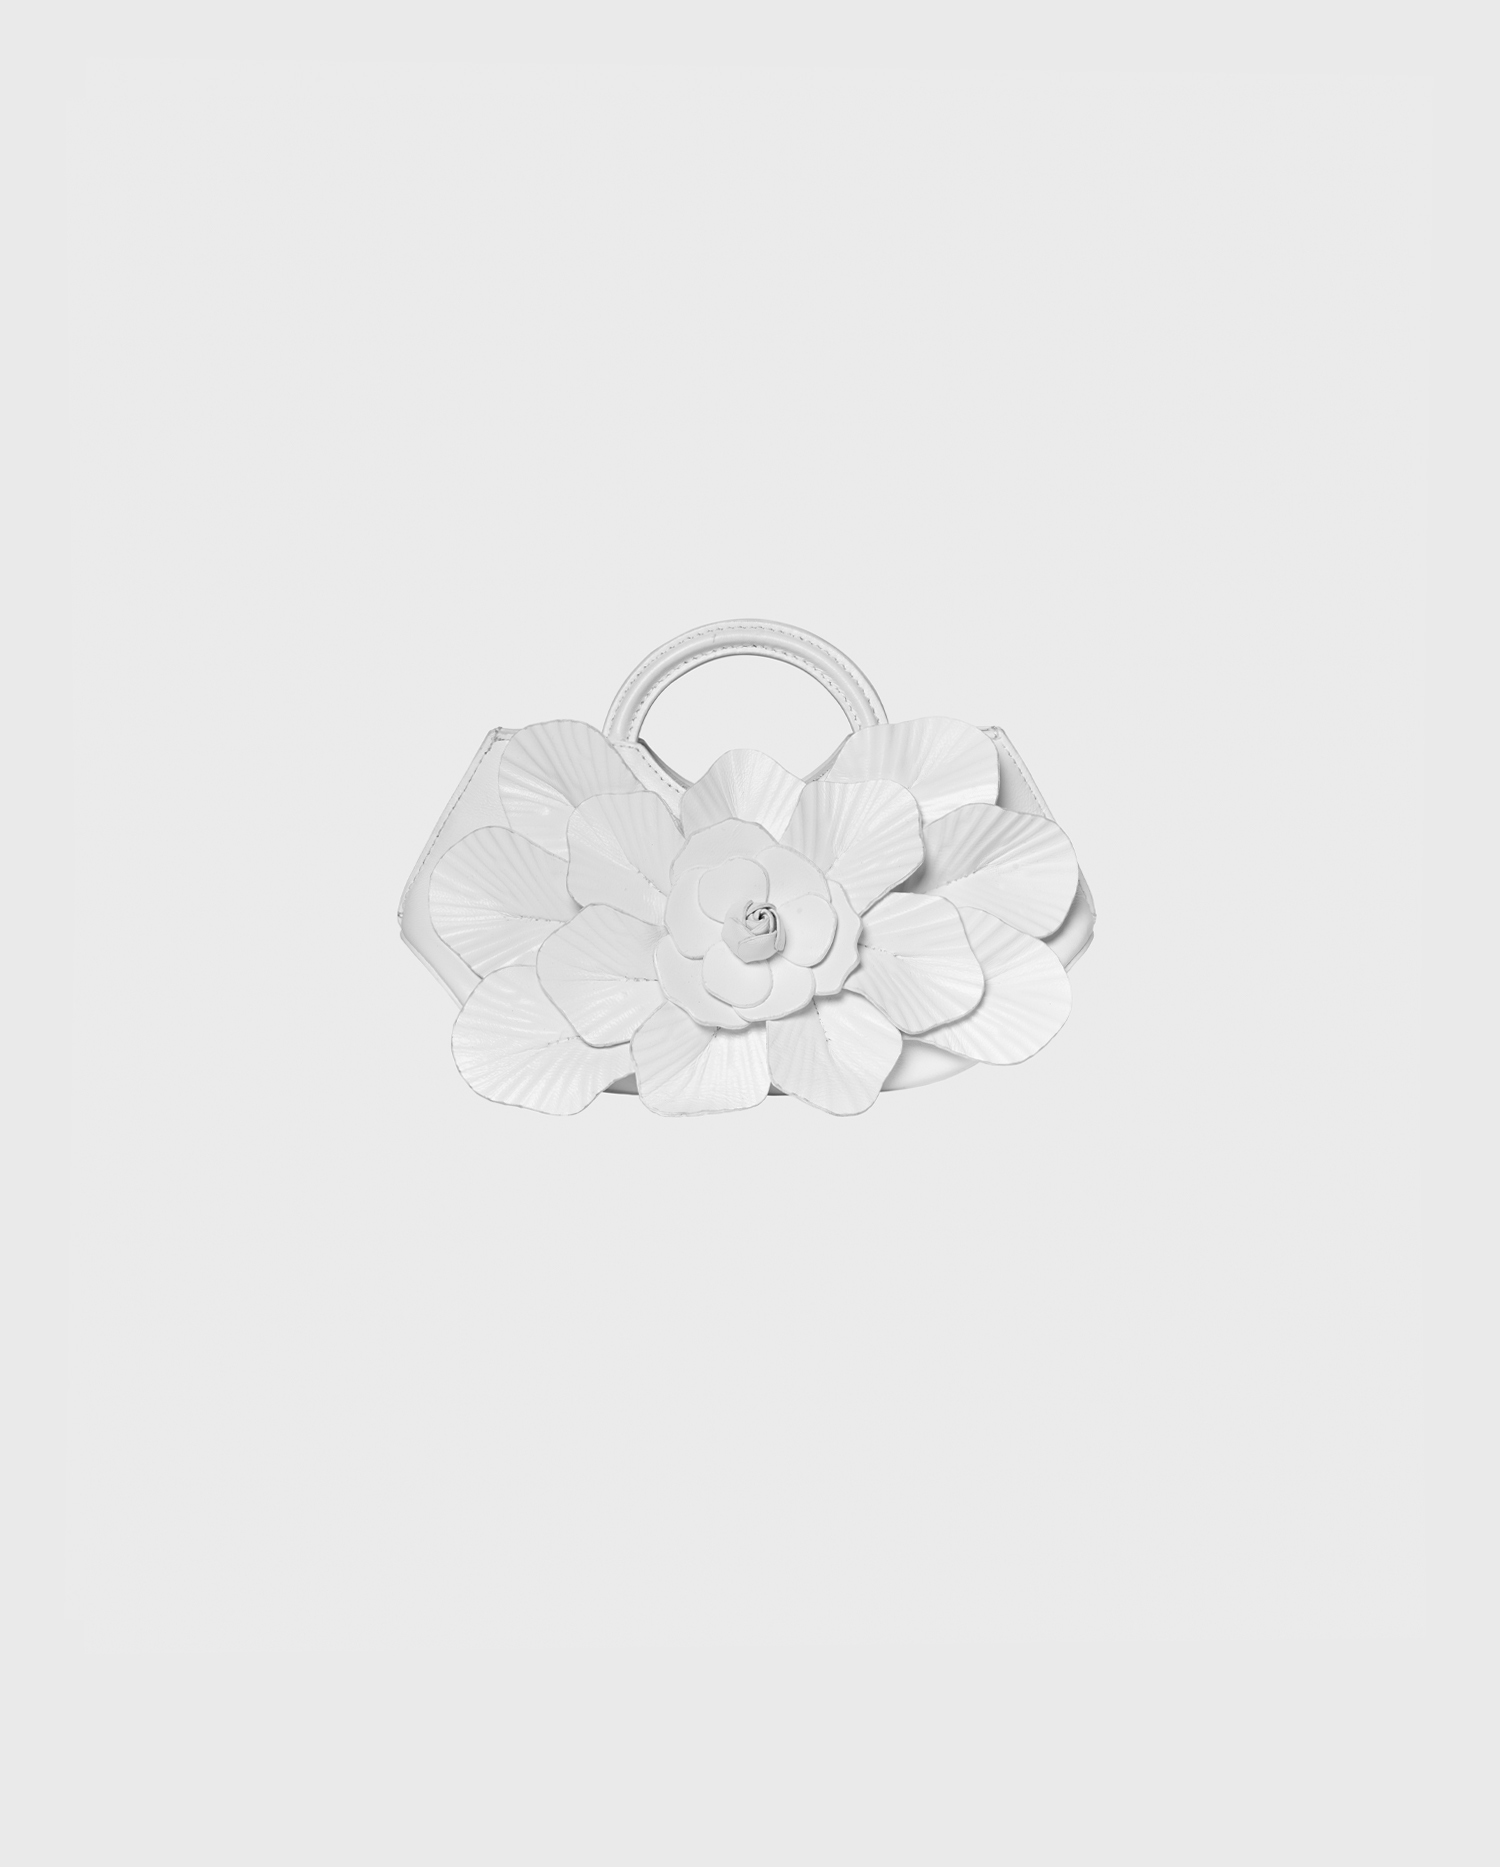 SCARLETT-MINI-WHITE: Signature leather mini floral handbag in white with removeable chain strap